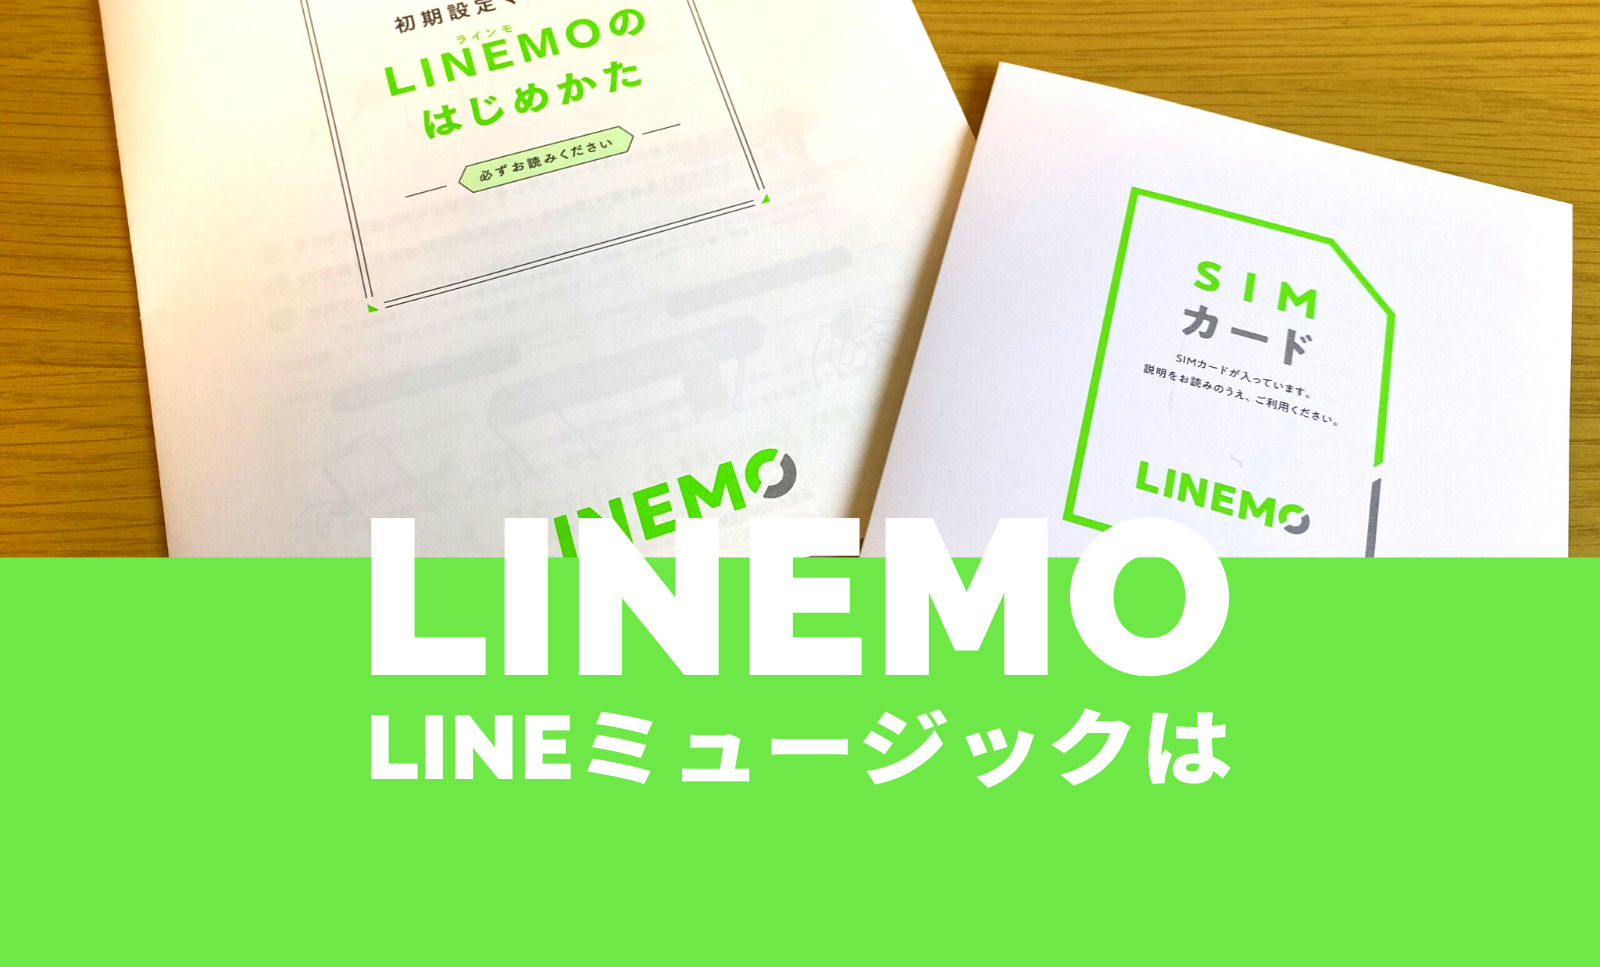 LINEMO(ラインモ)でLINEミュージックの通信料はギガカウントフリーに含まれない。のサムネイル画像